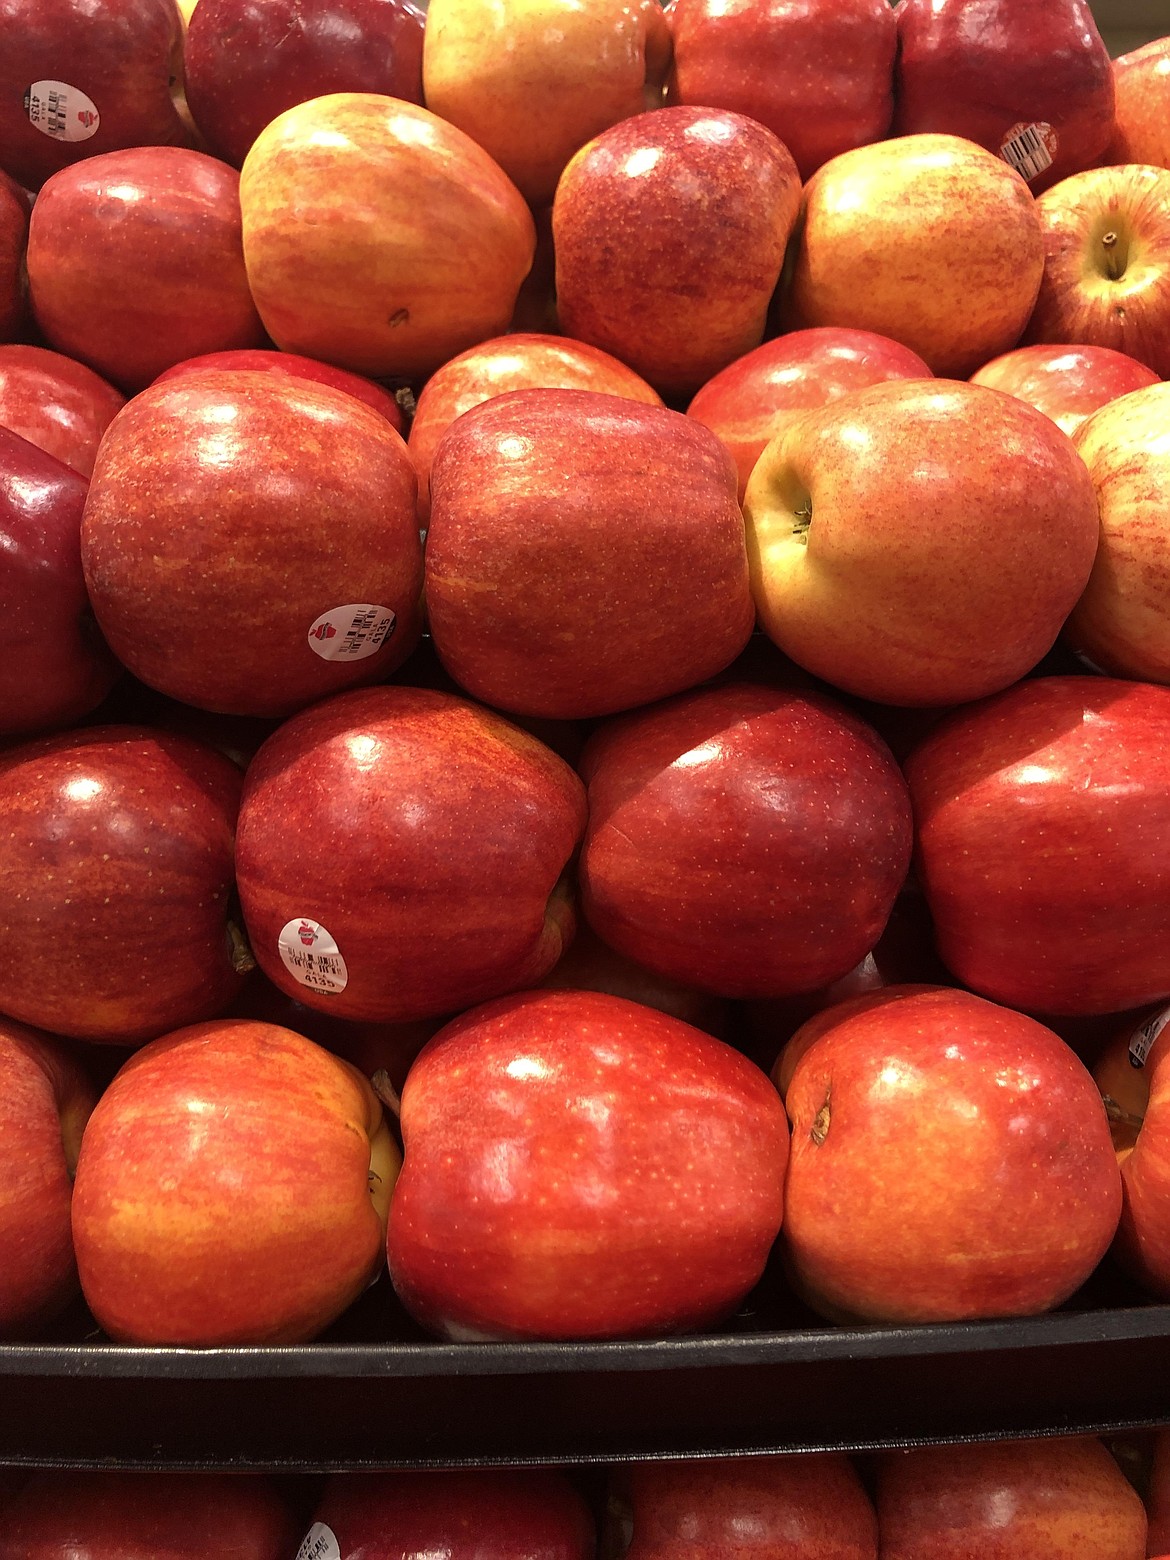 Apples on display.